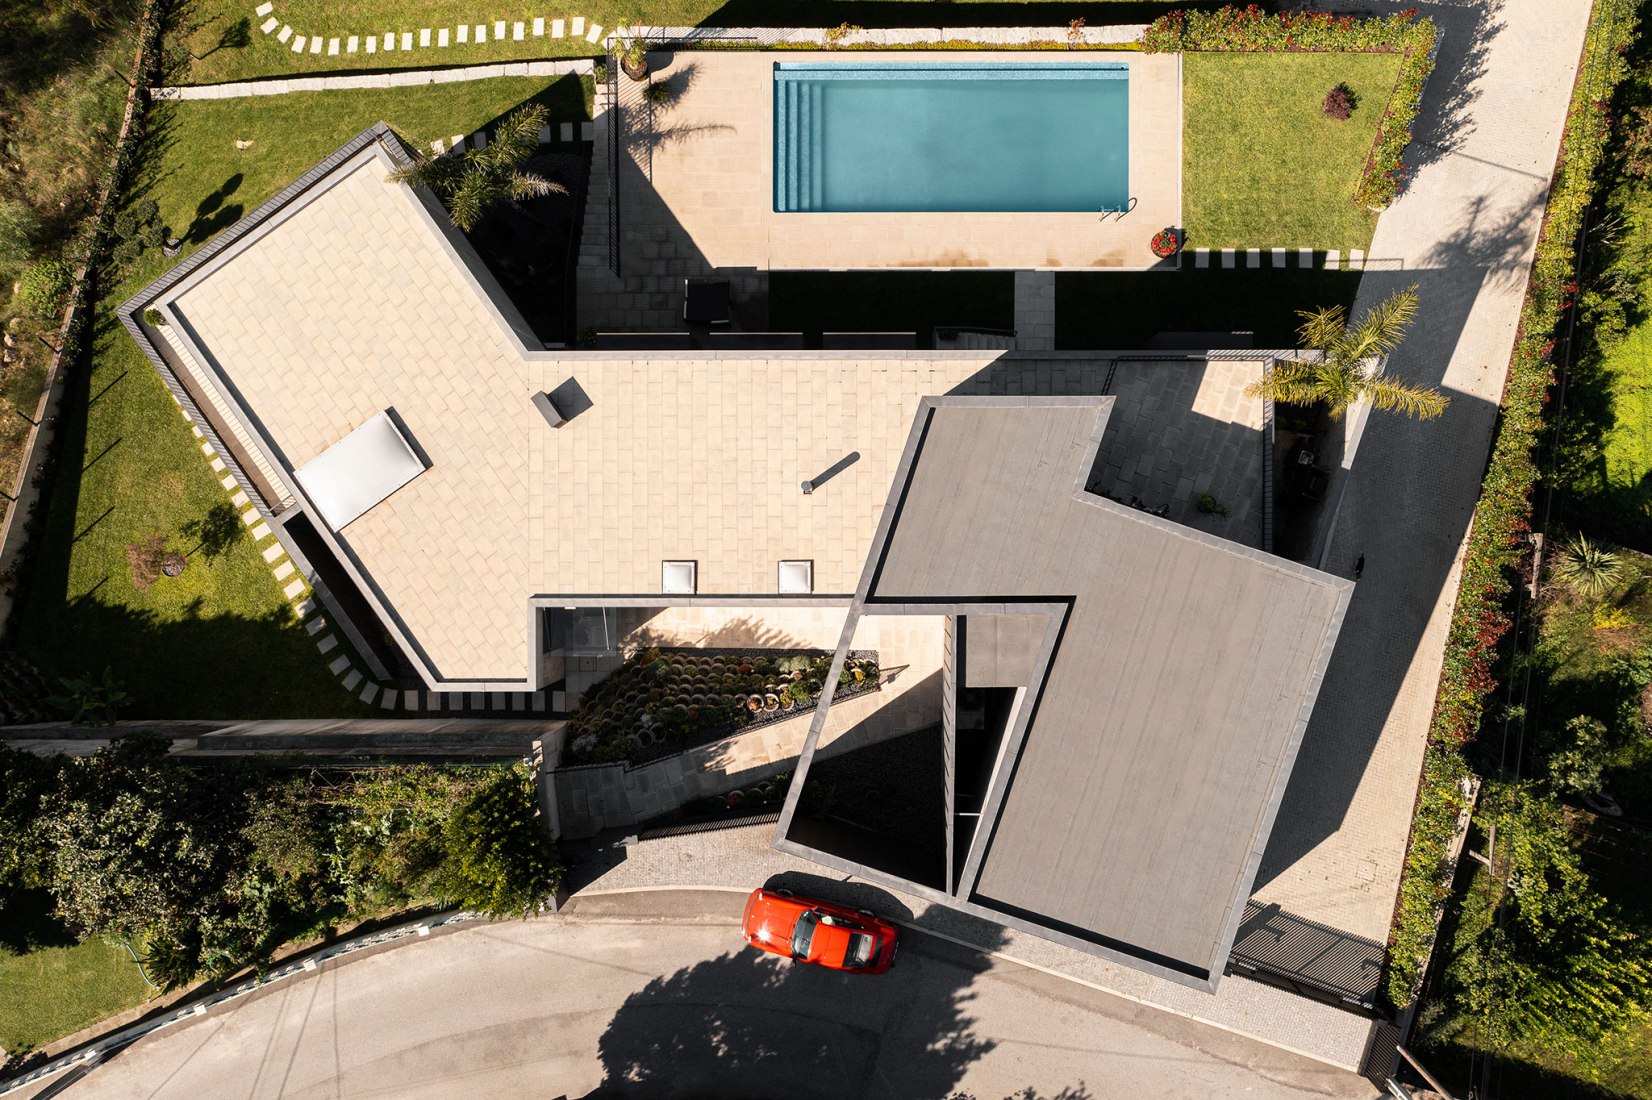 Casa Ps por Inception Architects Studio. Fotografía por Ivo Tavares Studio.